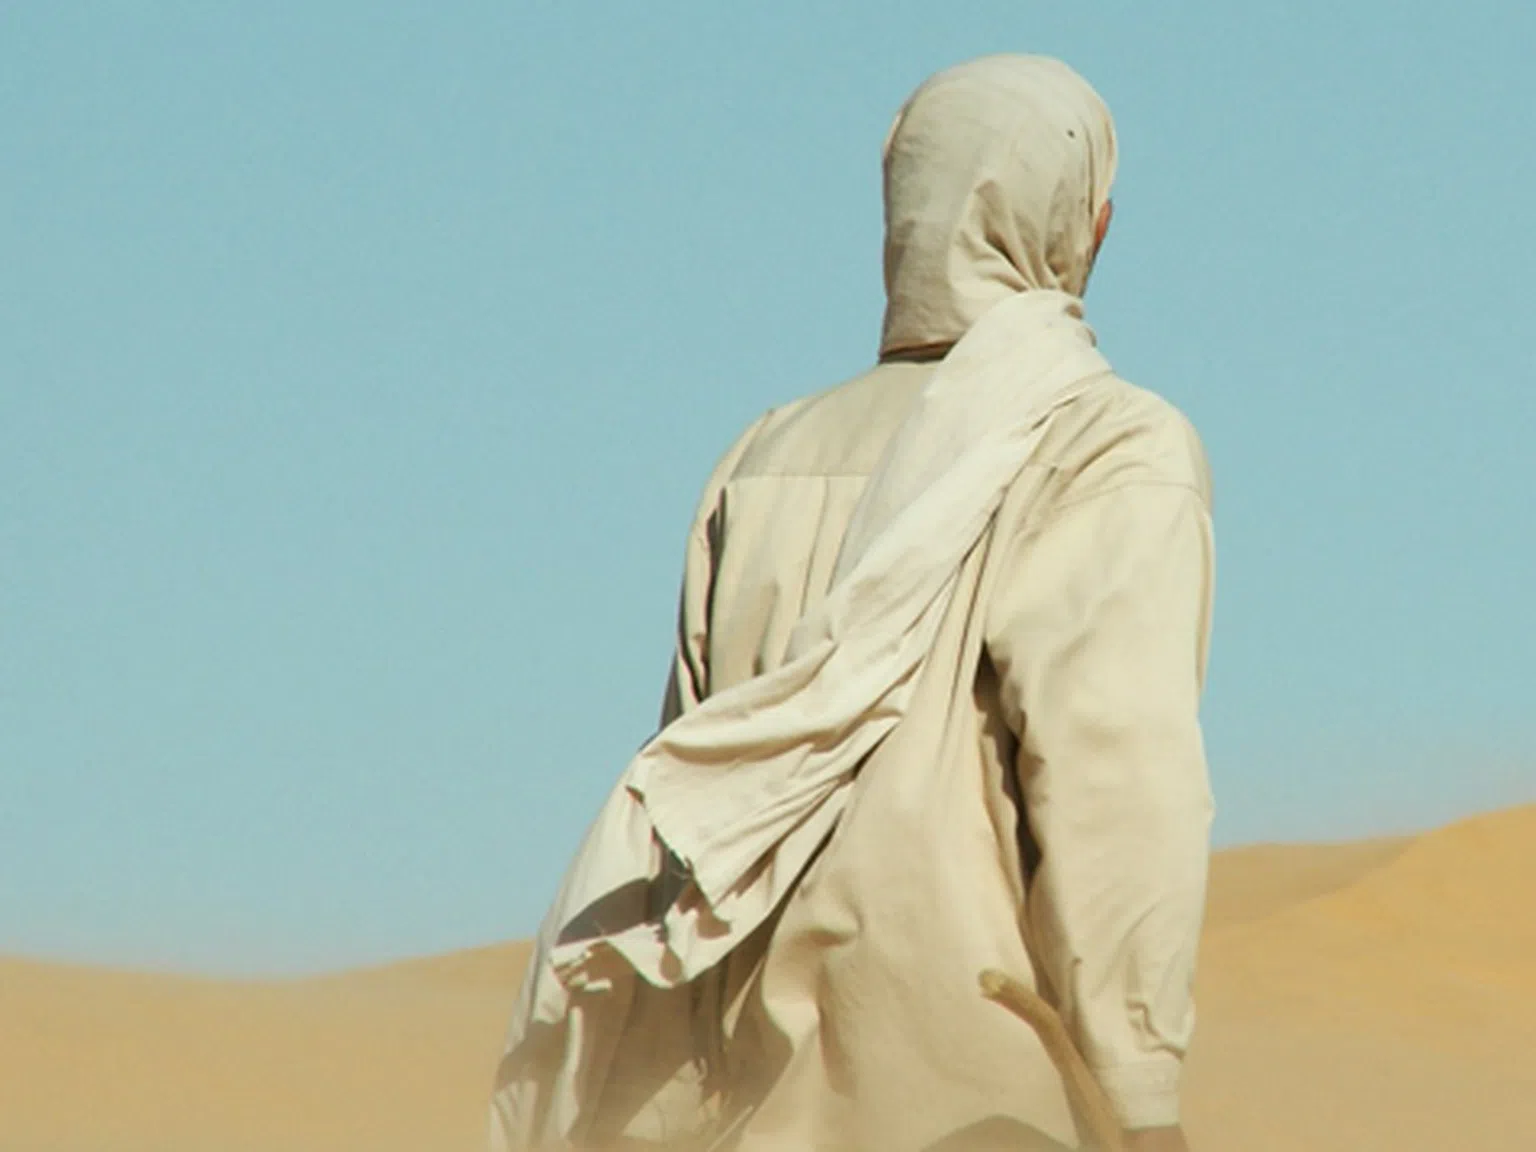 Пътешественик откри мистериозен артефакт в Сахара, който не принадлежи на нашата планета